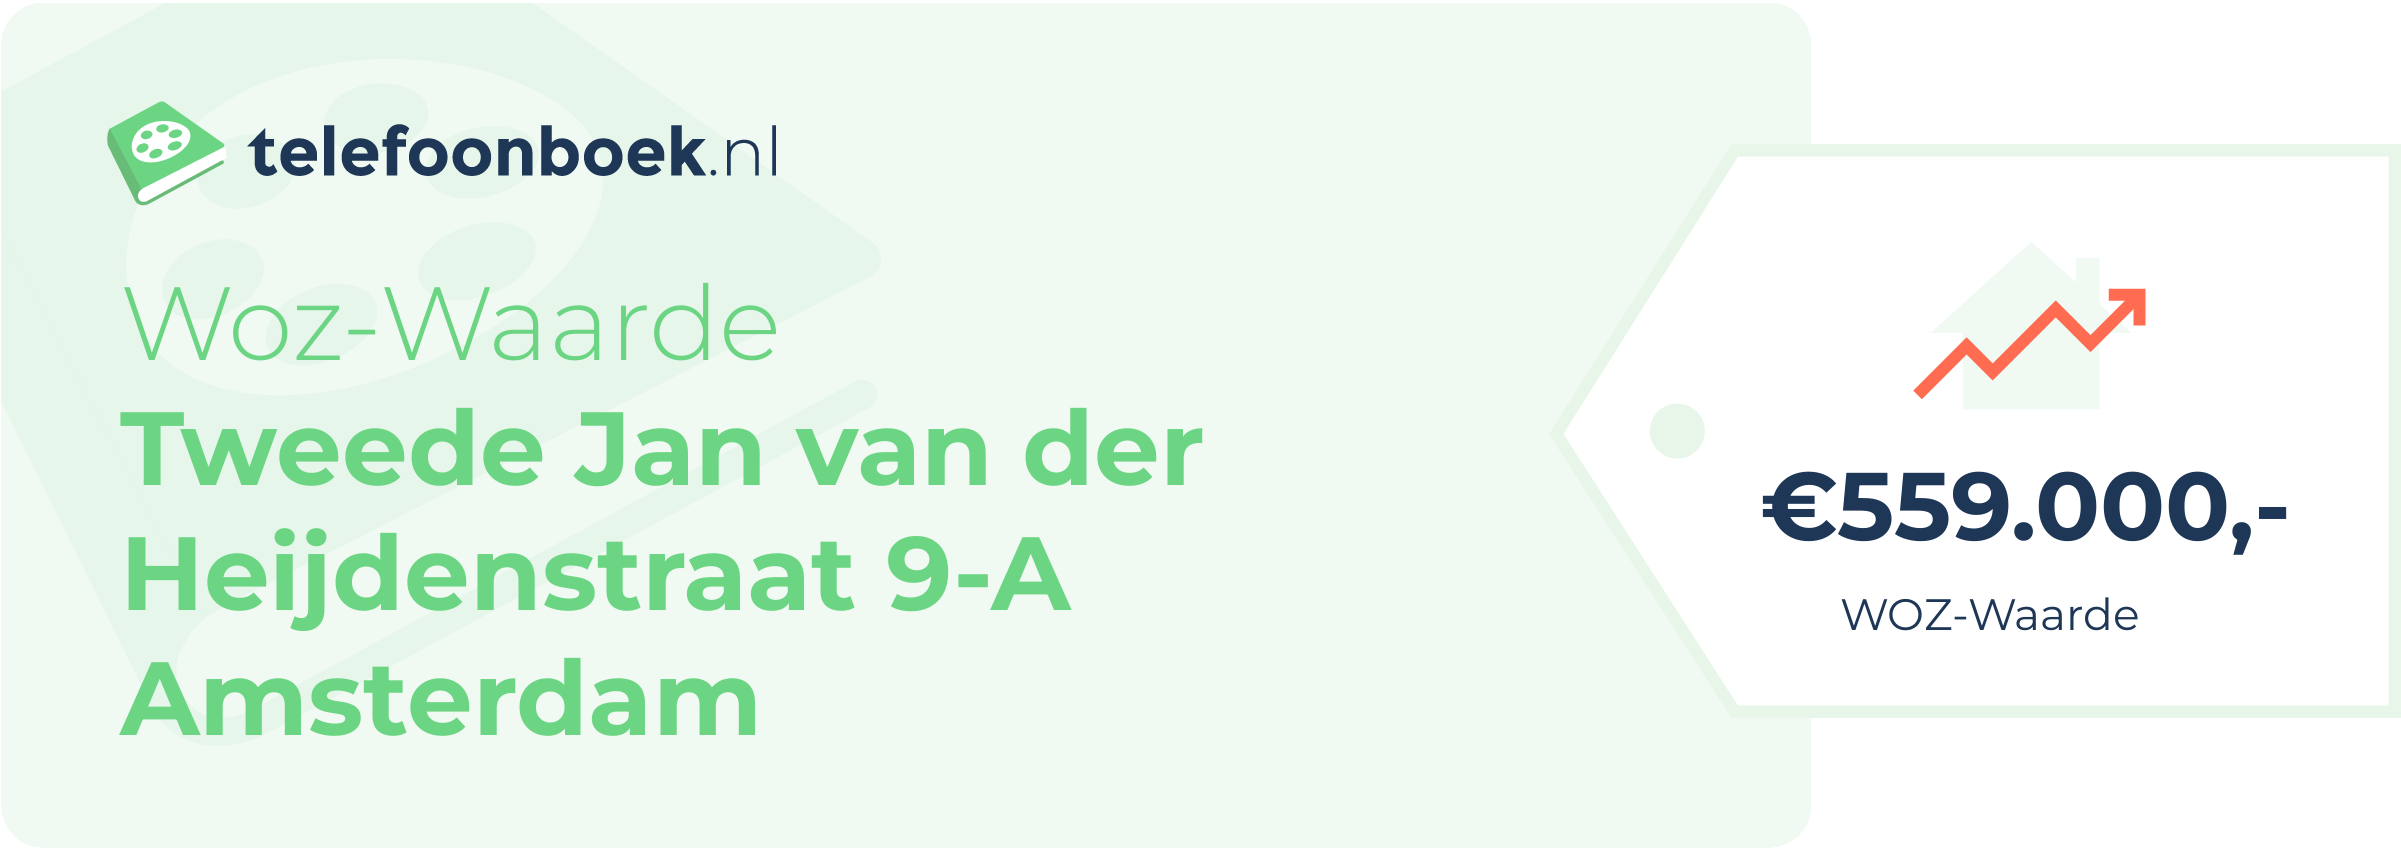 WOZ-waarde Tweede Jan Van Der Heijdenstraat 9-A Amsterdam